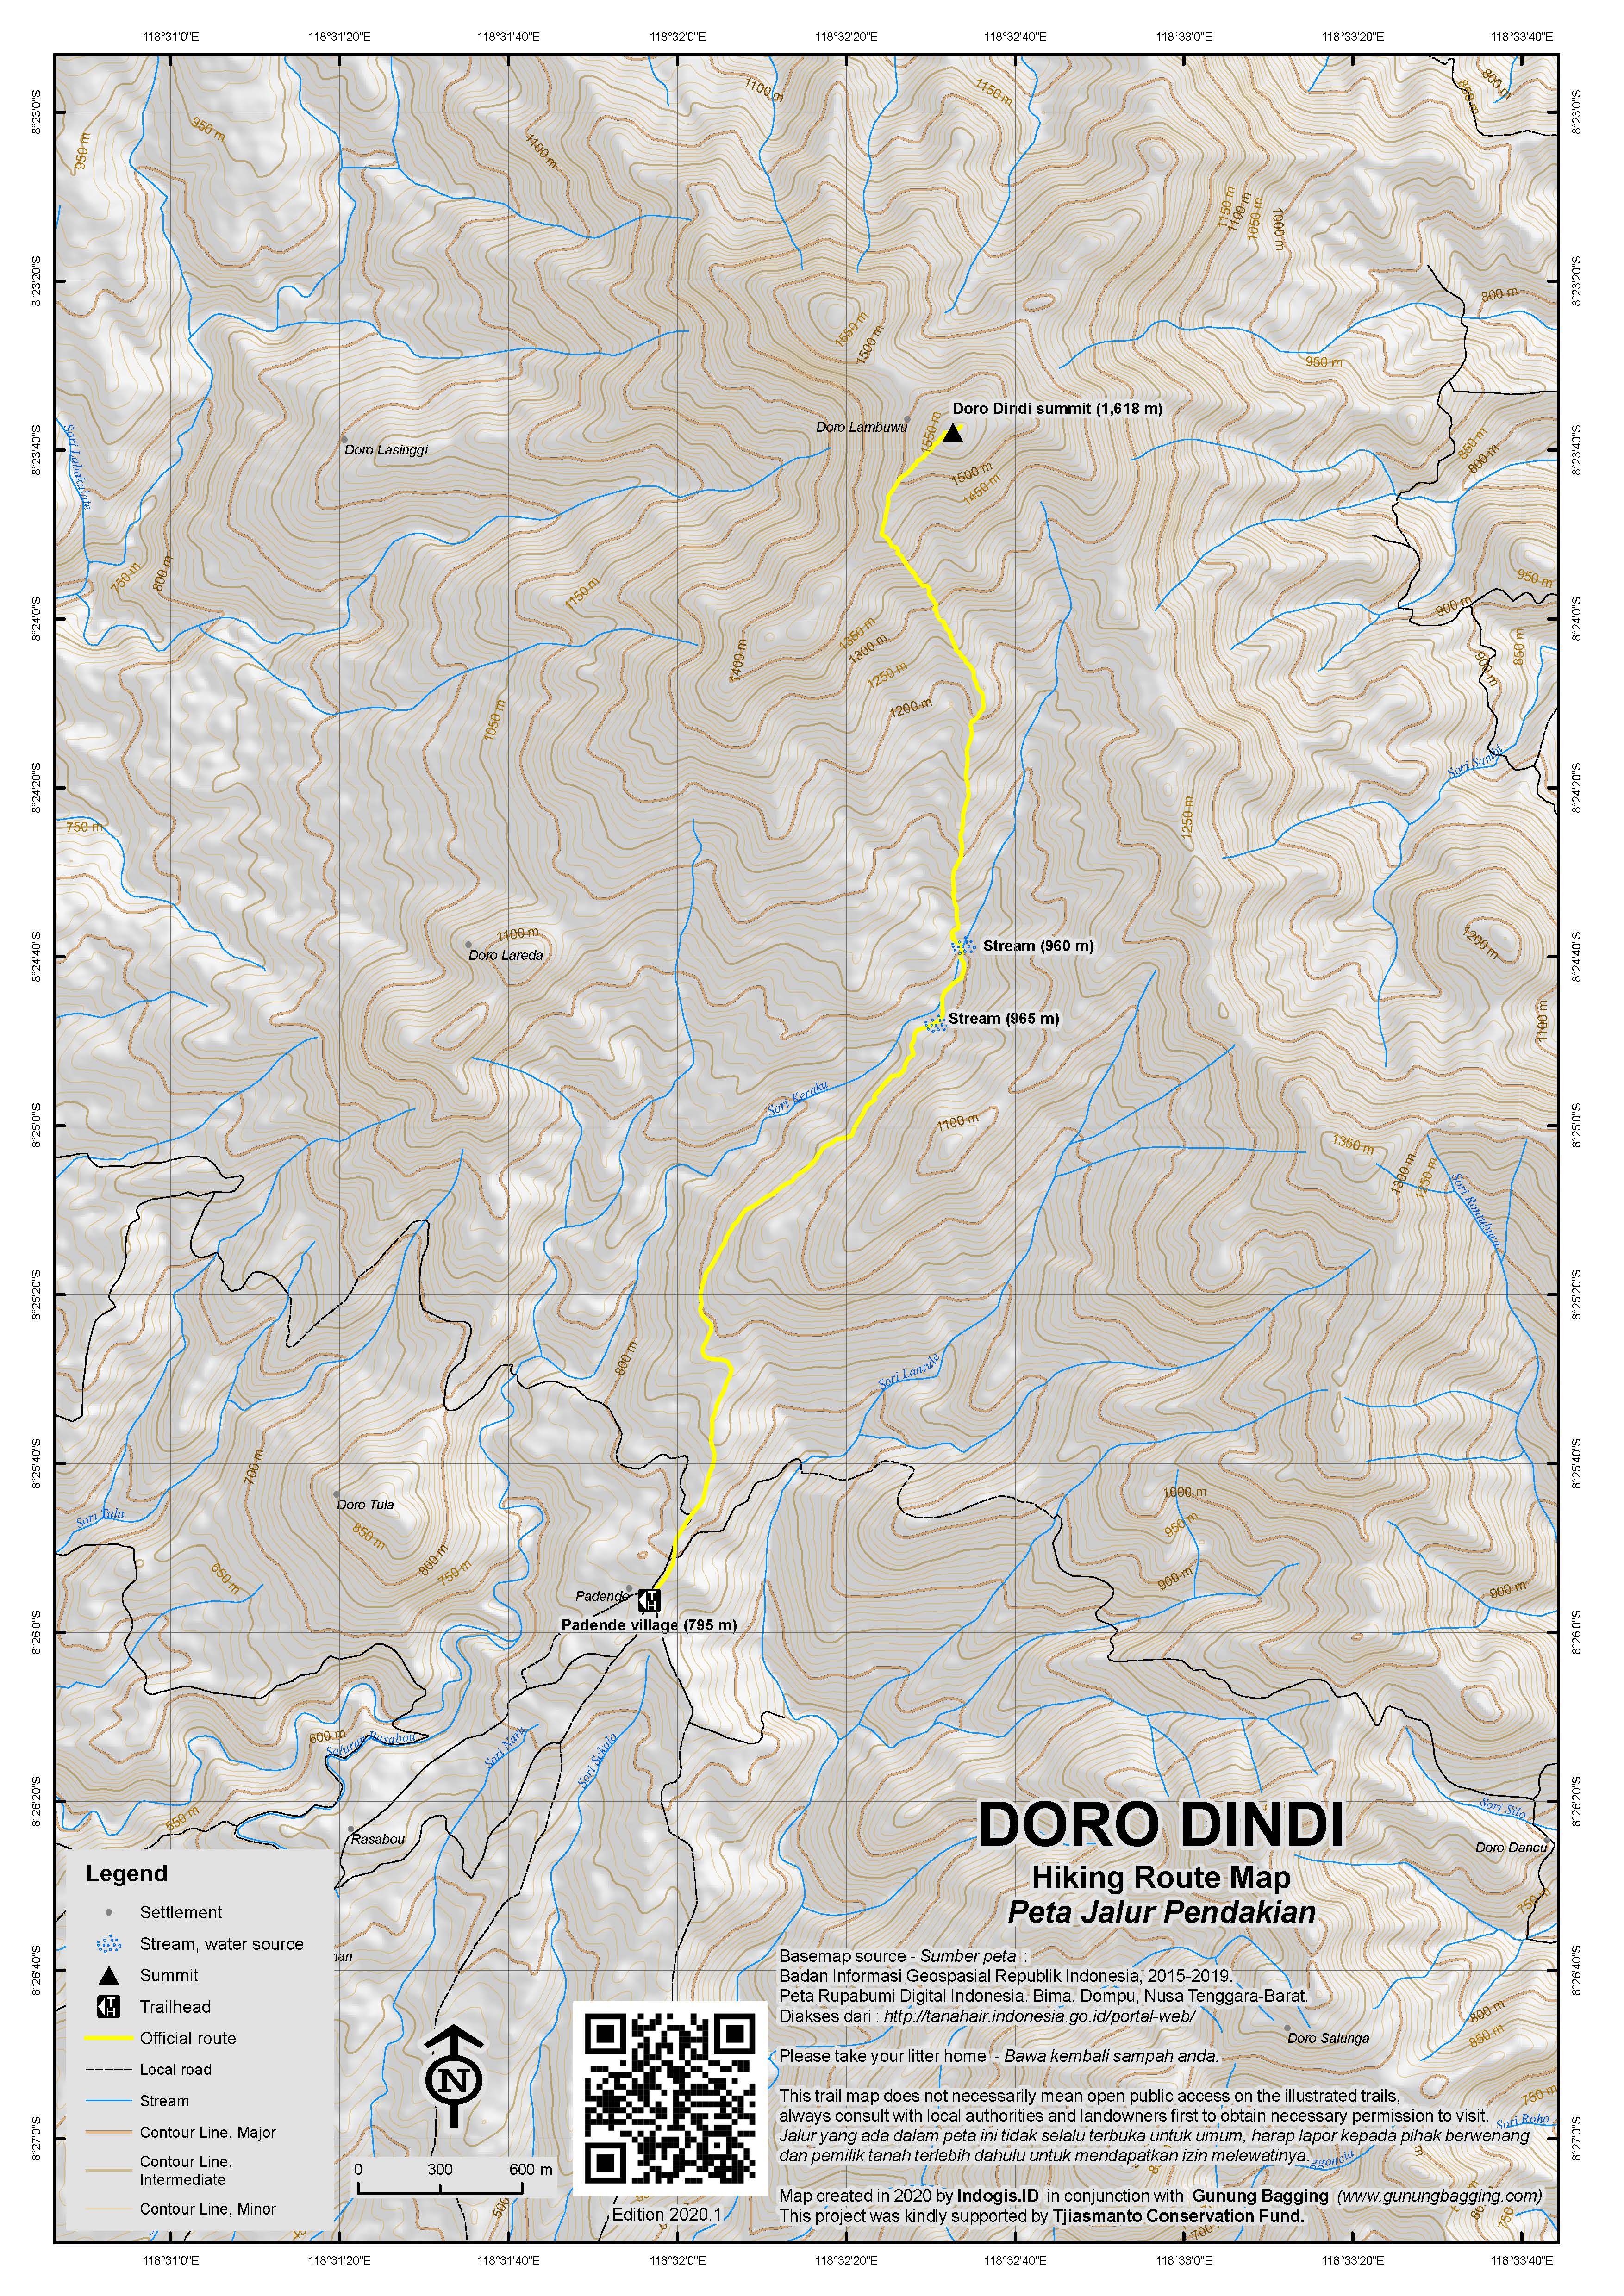 Peta Jalur Pendakian Doro Dindi